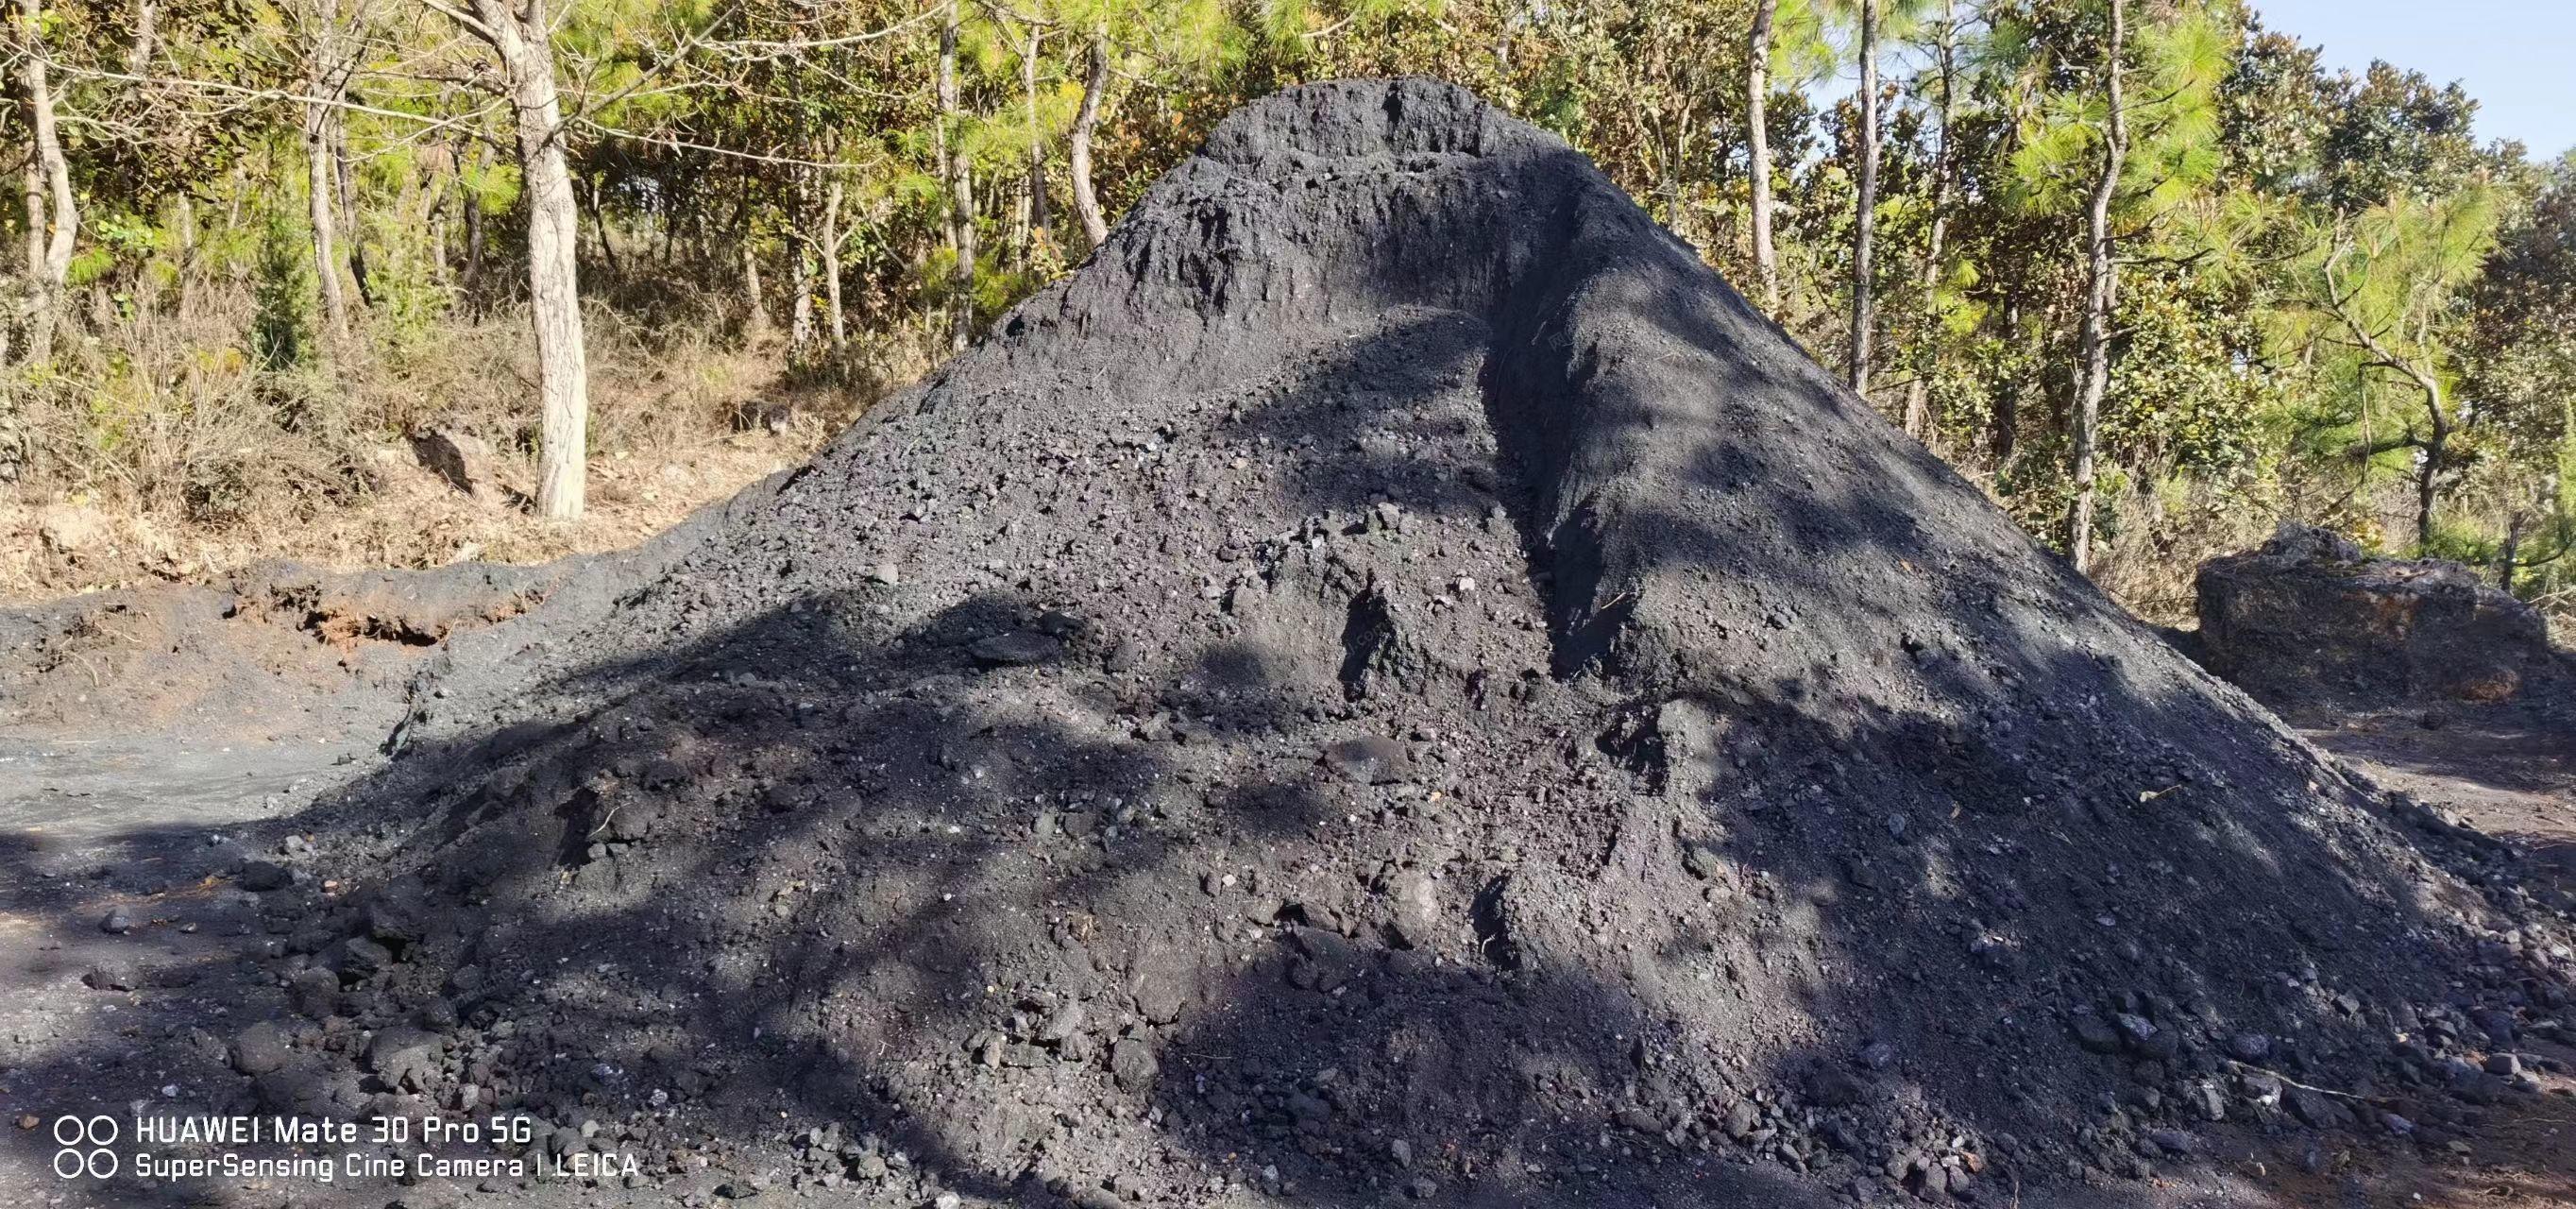 水泥制品厂处理低流面煤库存40吨，处理价1100元/吨，不议价，低价勿扰，详见图